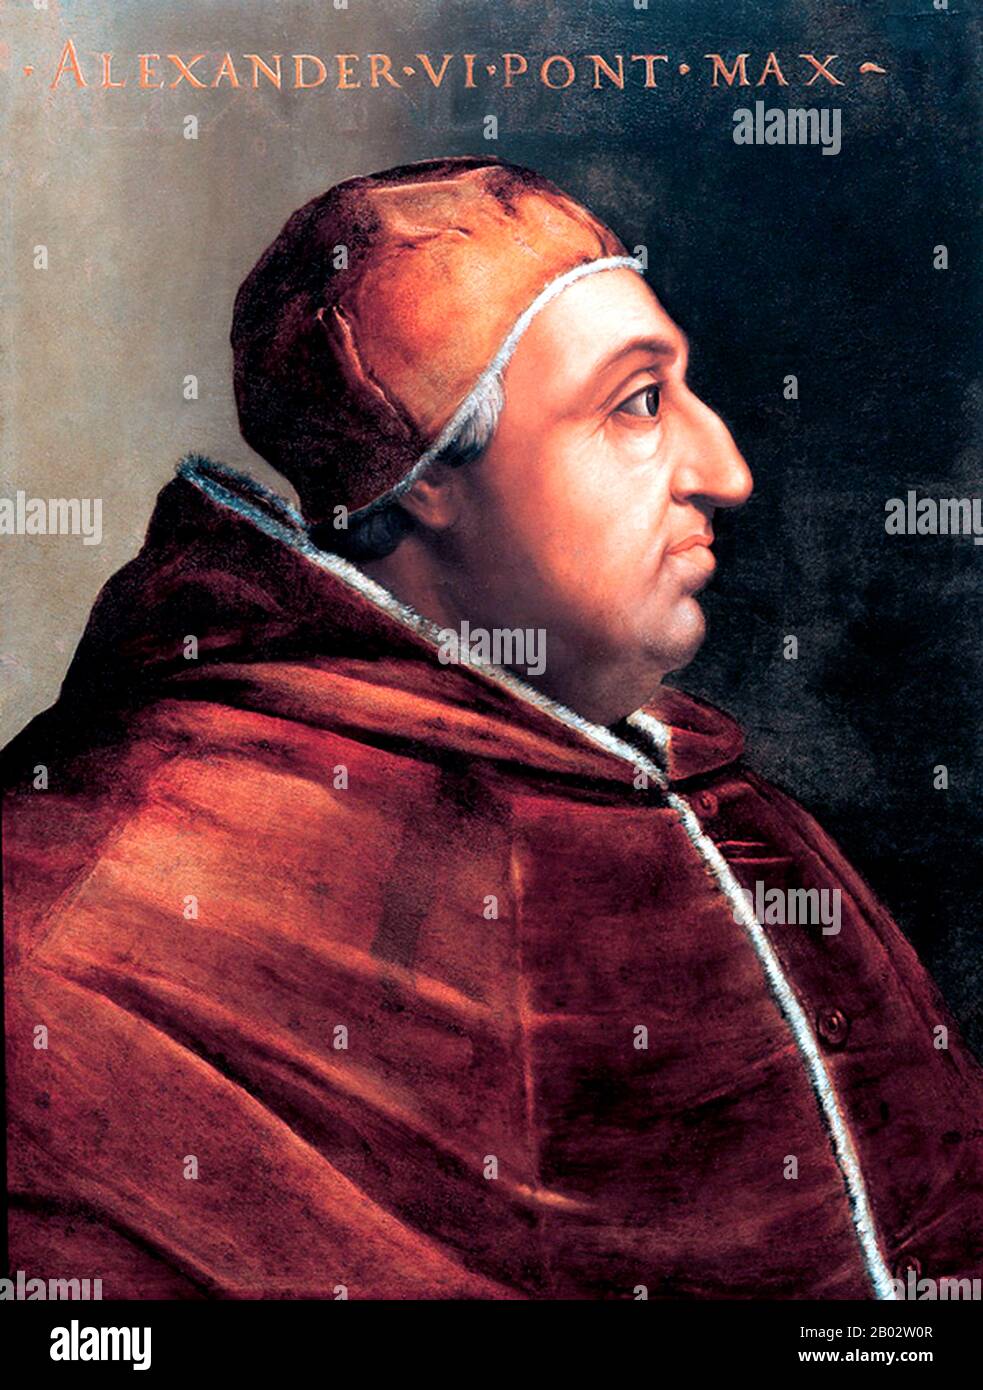 Papst Alexander VI., geborene Roderic Llançol i. de Borja (1. Januar 1431 - 18. August 1503), war vom 11. August 1492 bis zu seinem Tod Papst. Er ist der umstrittenste der Renaissance-Päpste, weil er das priesterliche Gelübde des Zölibats brach und mehrere legitim anerkannte Kinder hatte. Daher wurde sein italianisierter valencianischer Familienname Borgia zum Schlagwort für Libertinismus und Vetternwirtschaft, die traditionell als Charakterisierung seines Pontifikats gelten. Zwei der Nachfolger Alexanders, Sixtus V. und Urban VIII., bezeichneten ihn jedoch als einen der herausragendsten Päpste seit St. Peter. Stockfoto